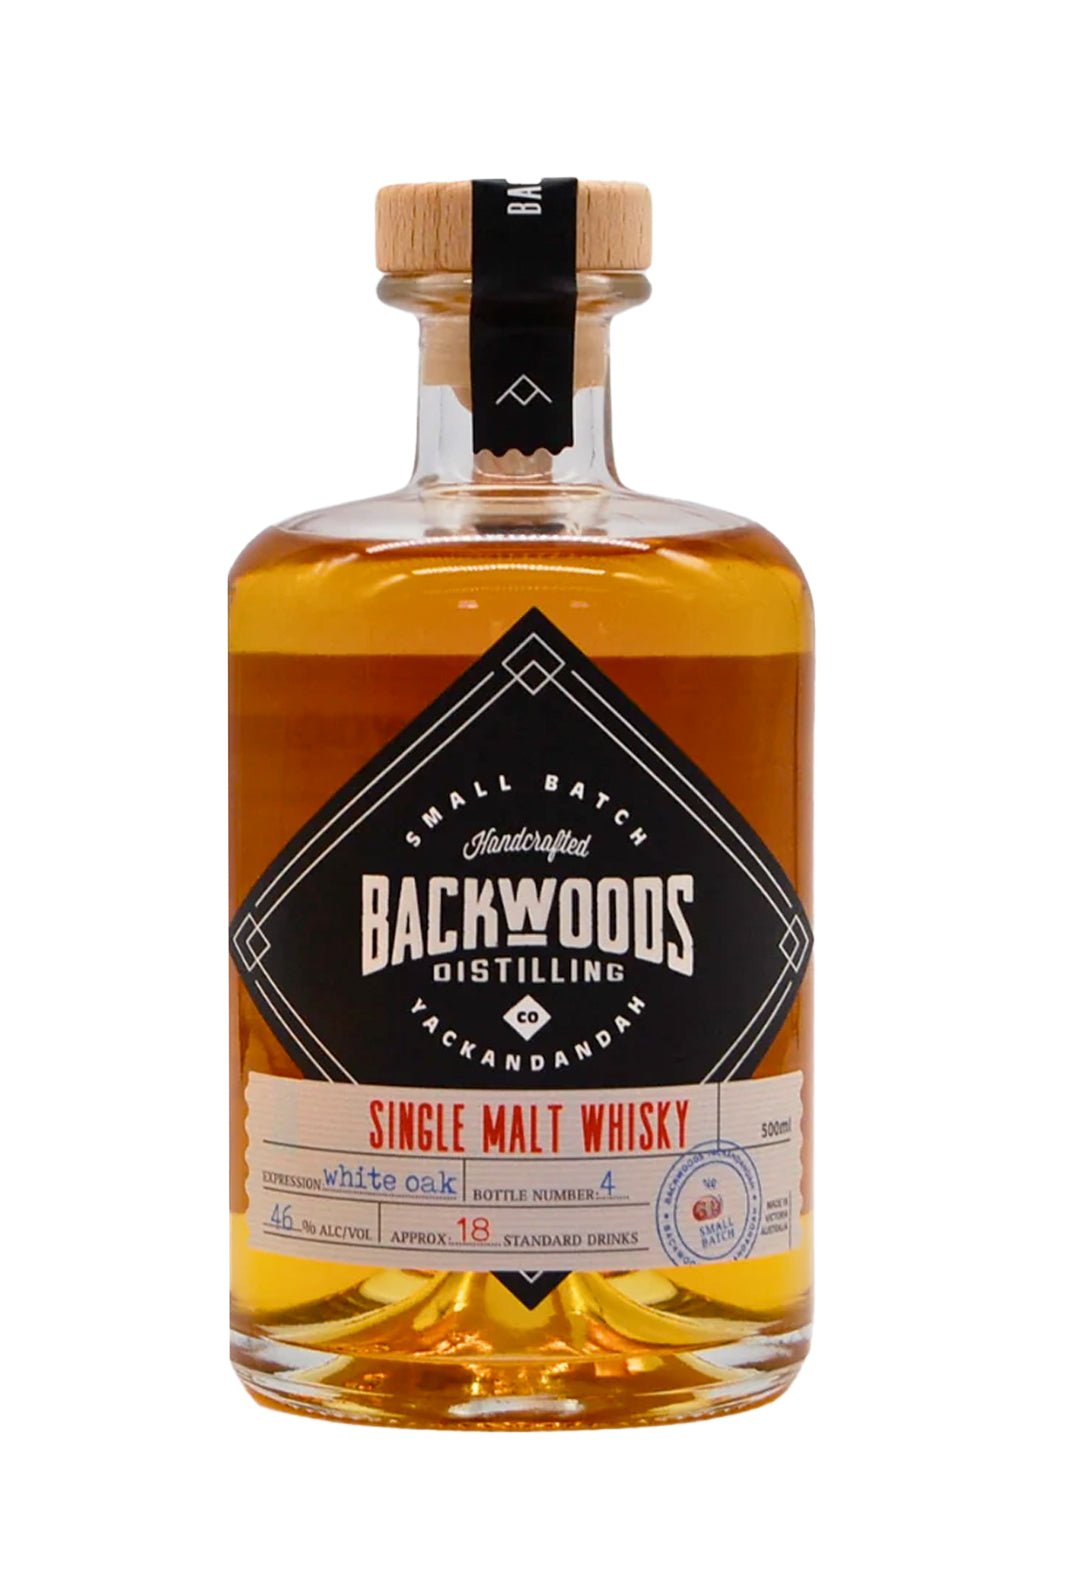 Backwoods Single Malt White oak Expression 46% 500ml | Whisky | Shop online at Spirits of France